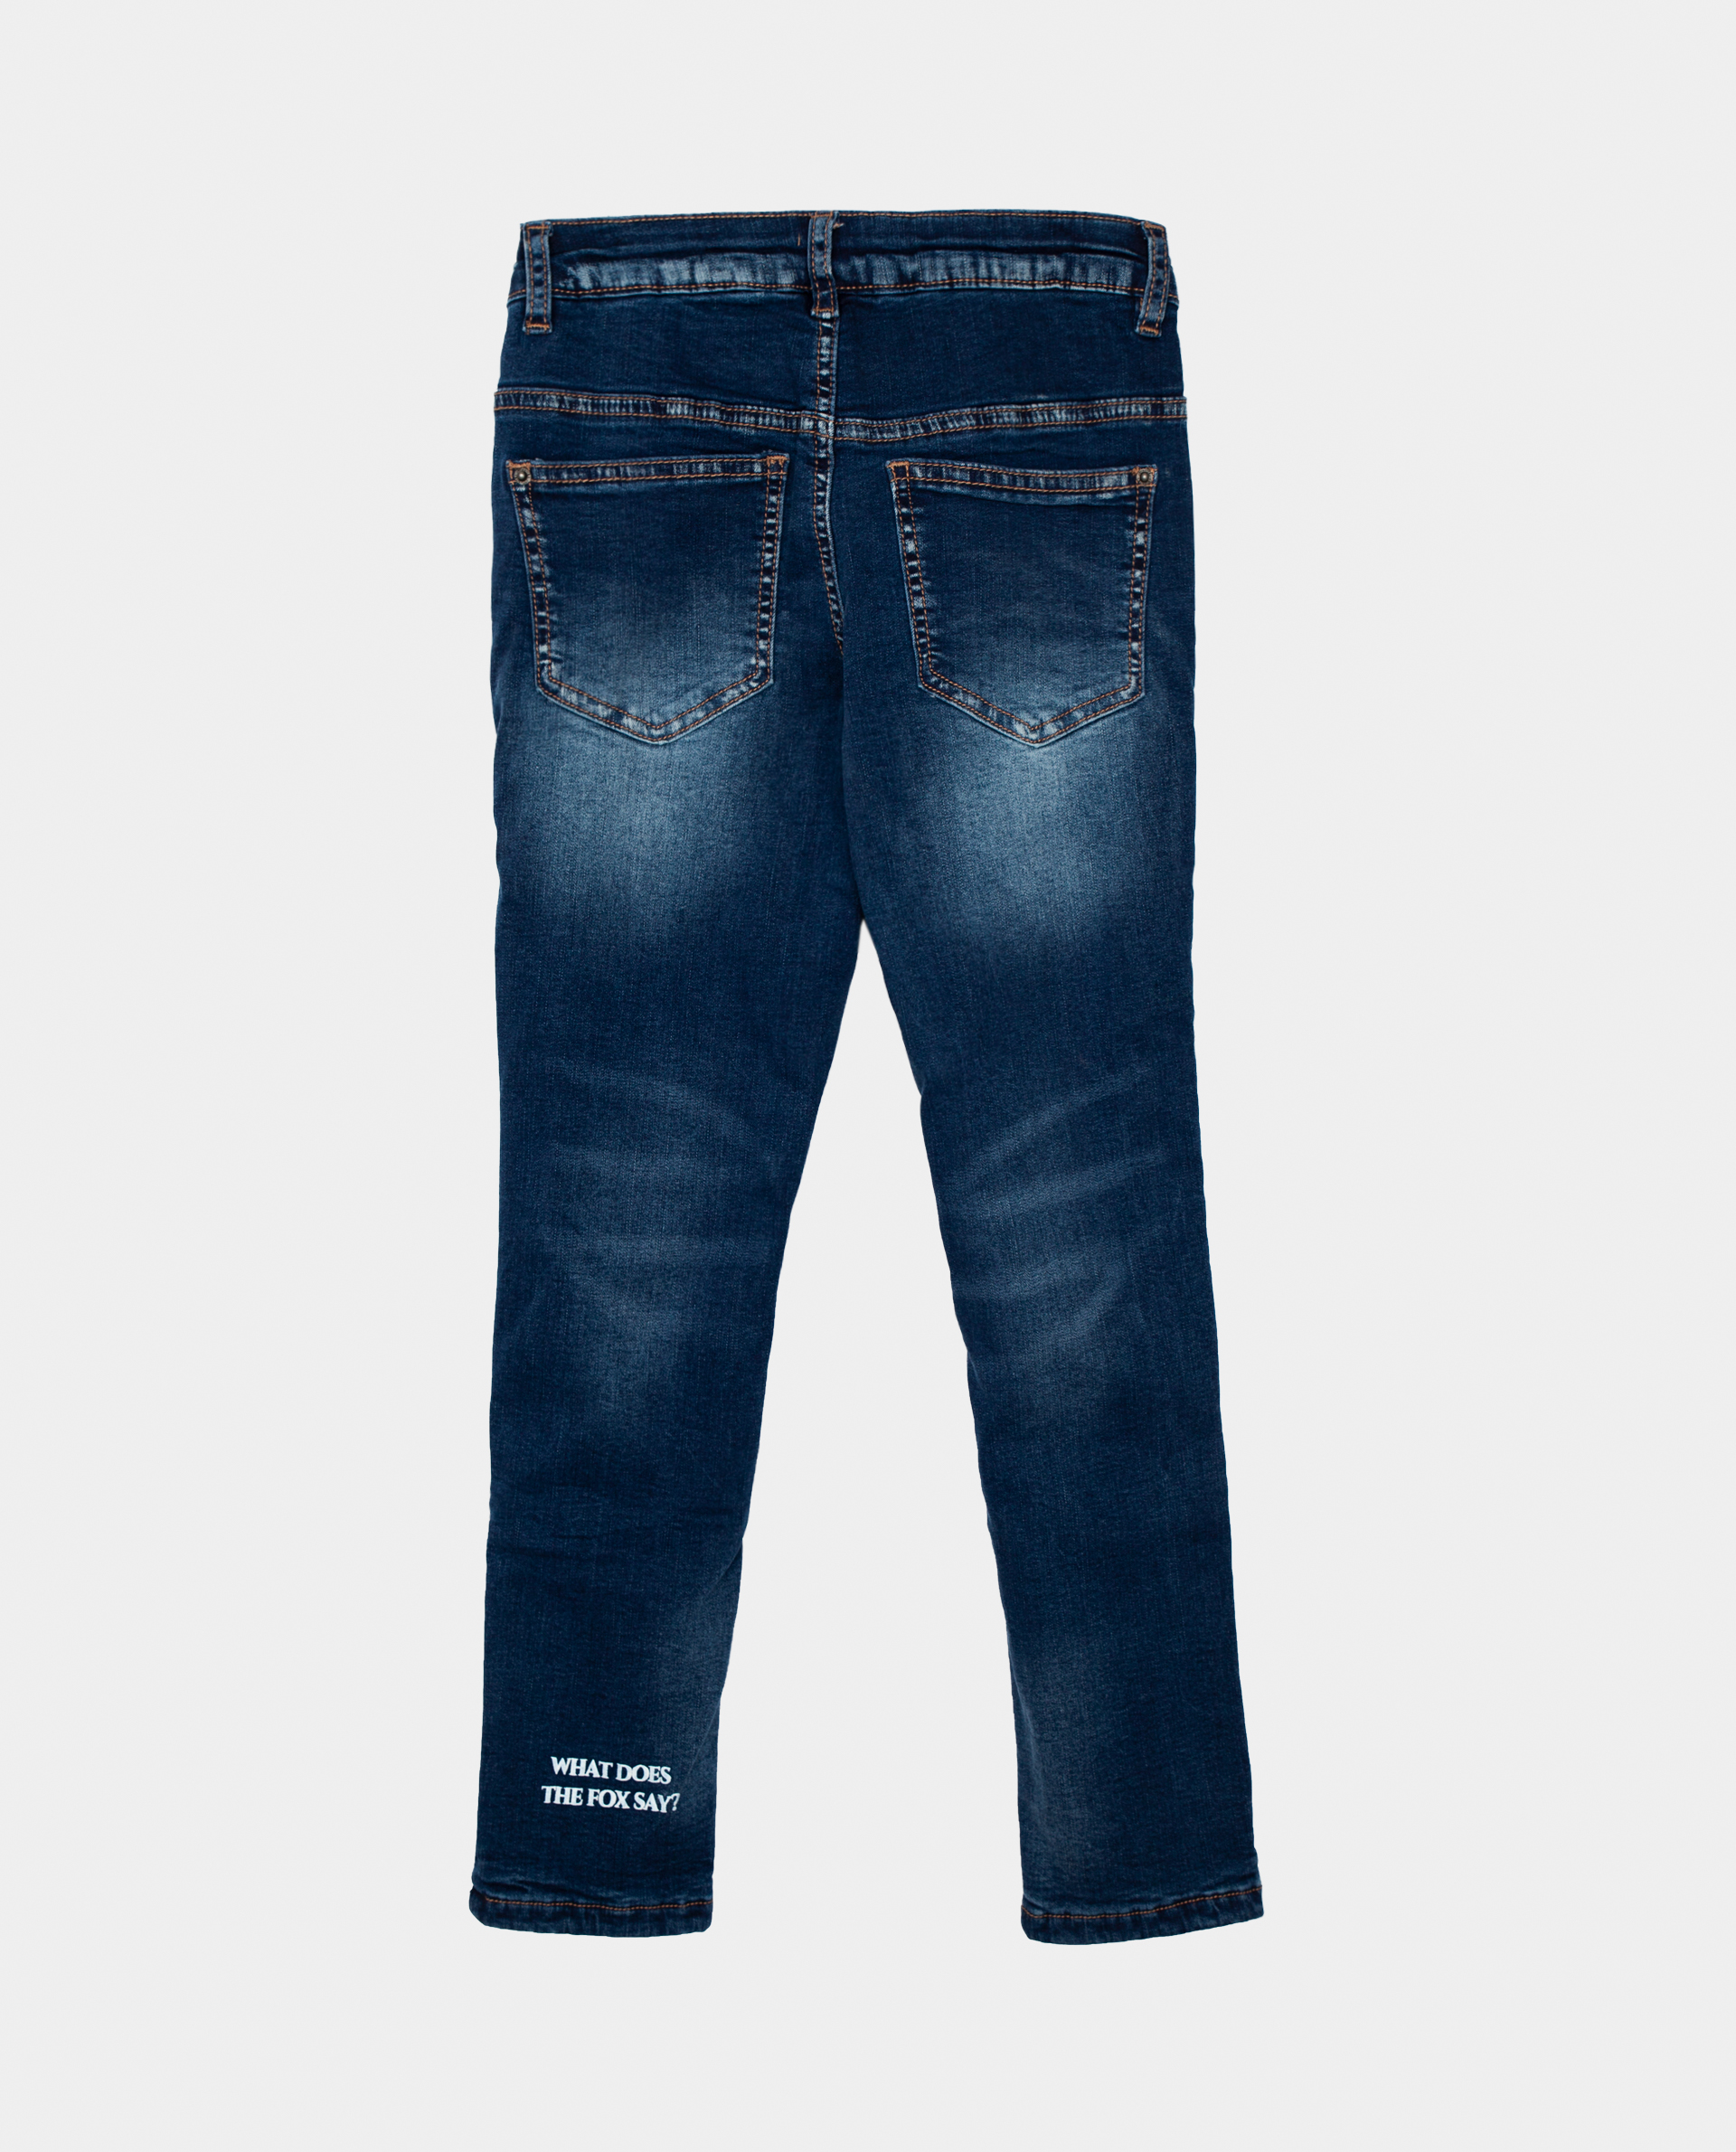 Голубые джинсы утепленные Gulliver 22002GMC6402, размер 128, цвет голубой regular fit / прямые - фото 2